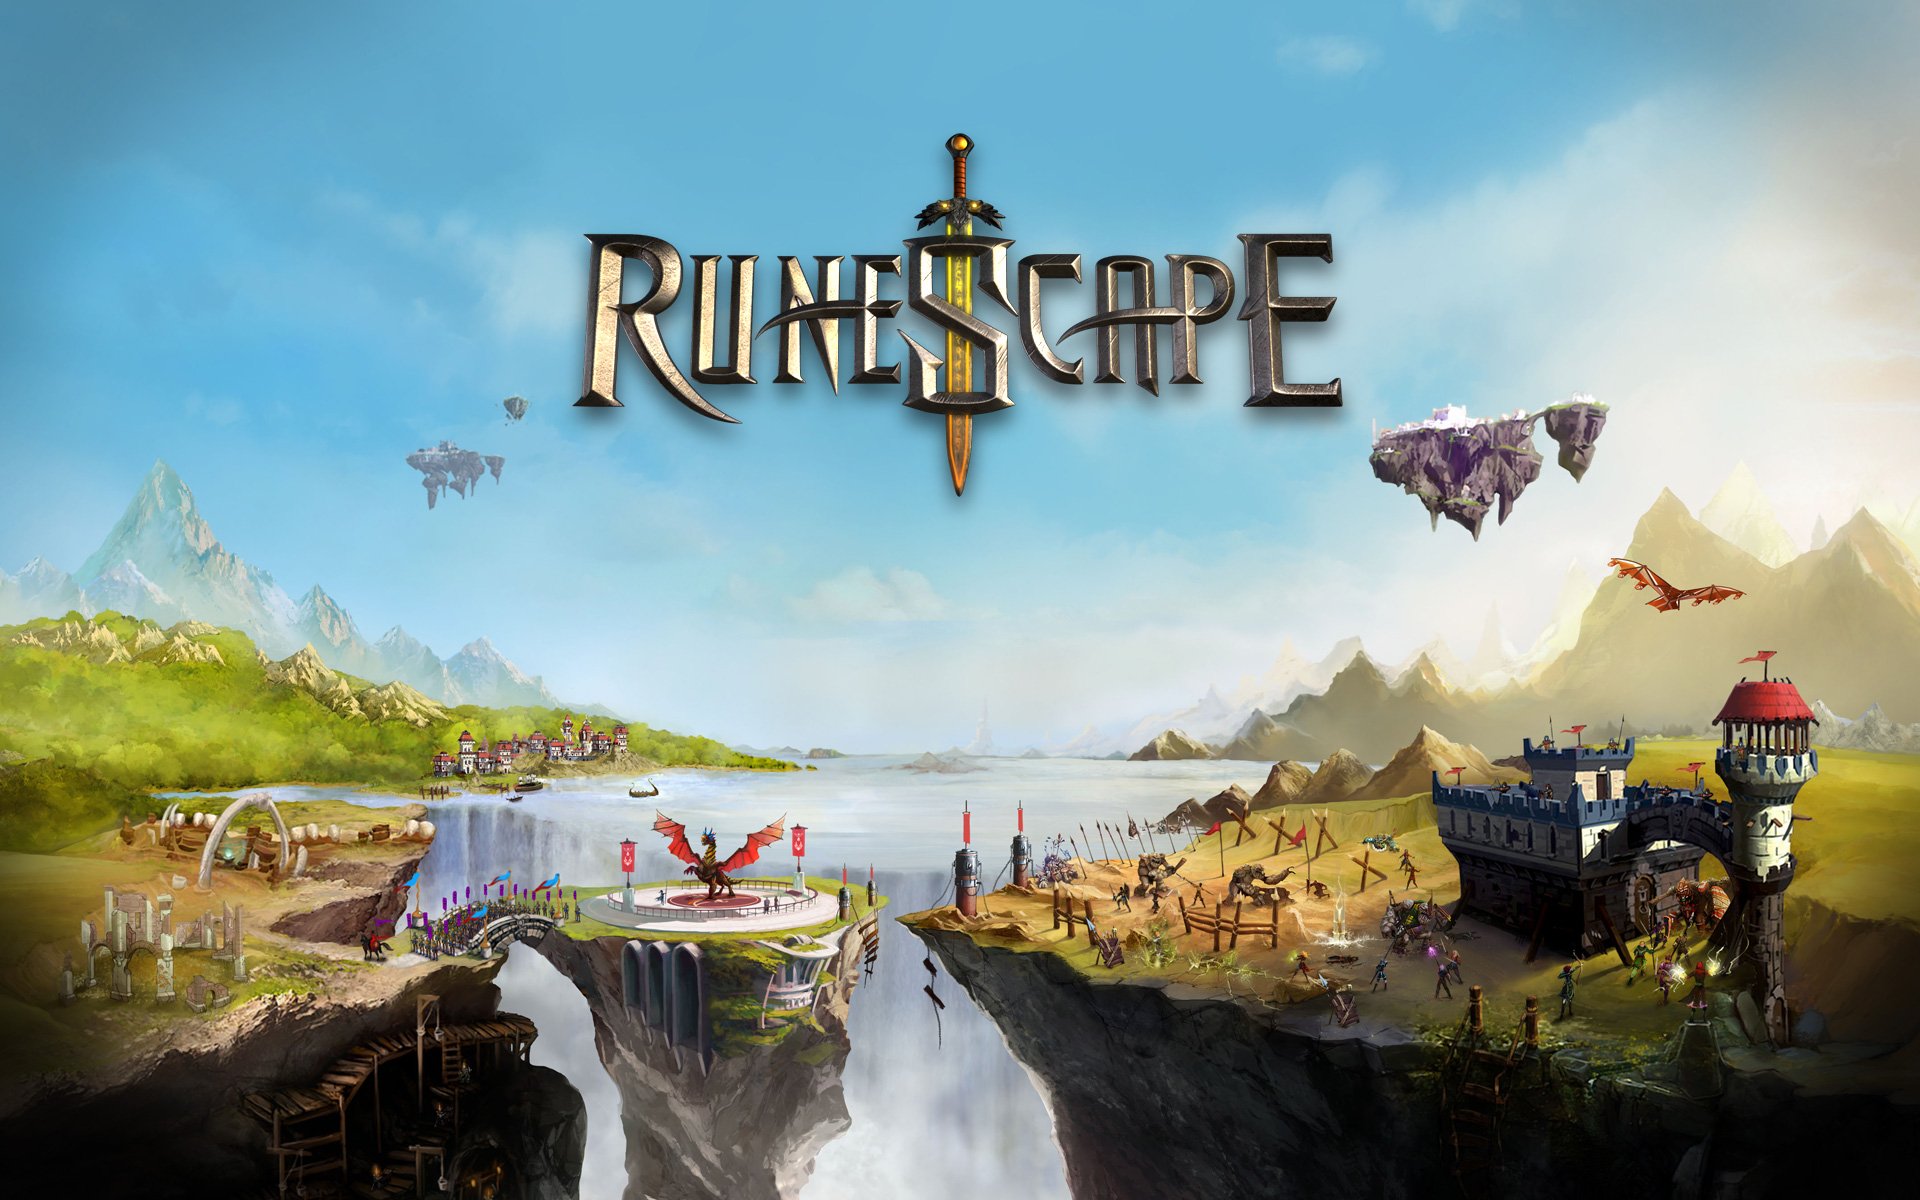 RuneScape Versão Móvel - Baixar APK para Android